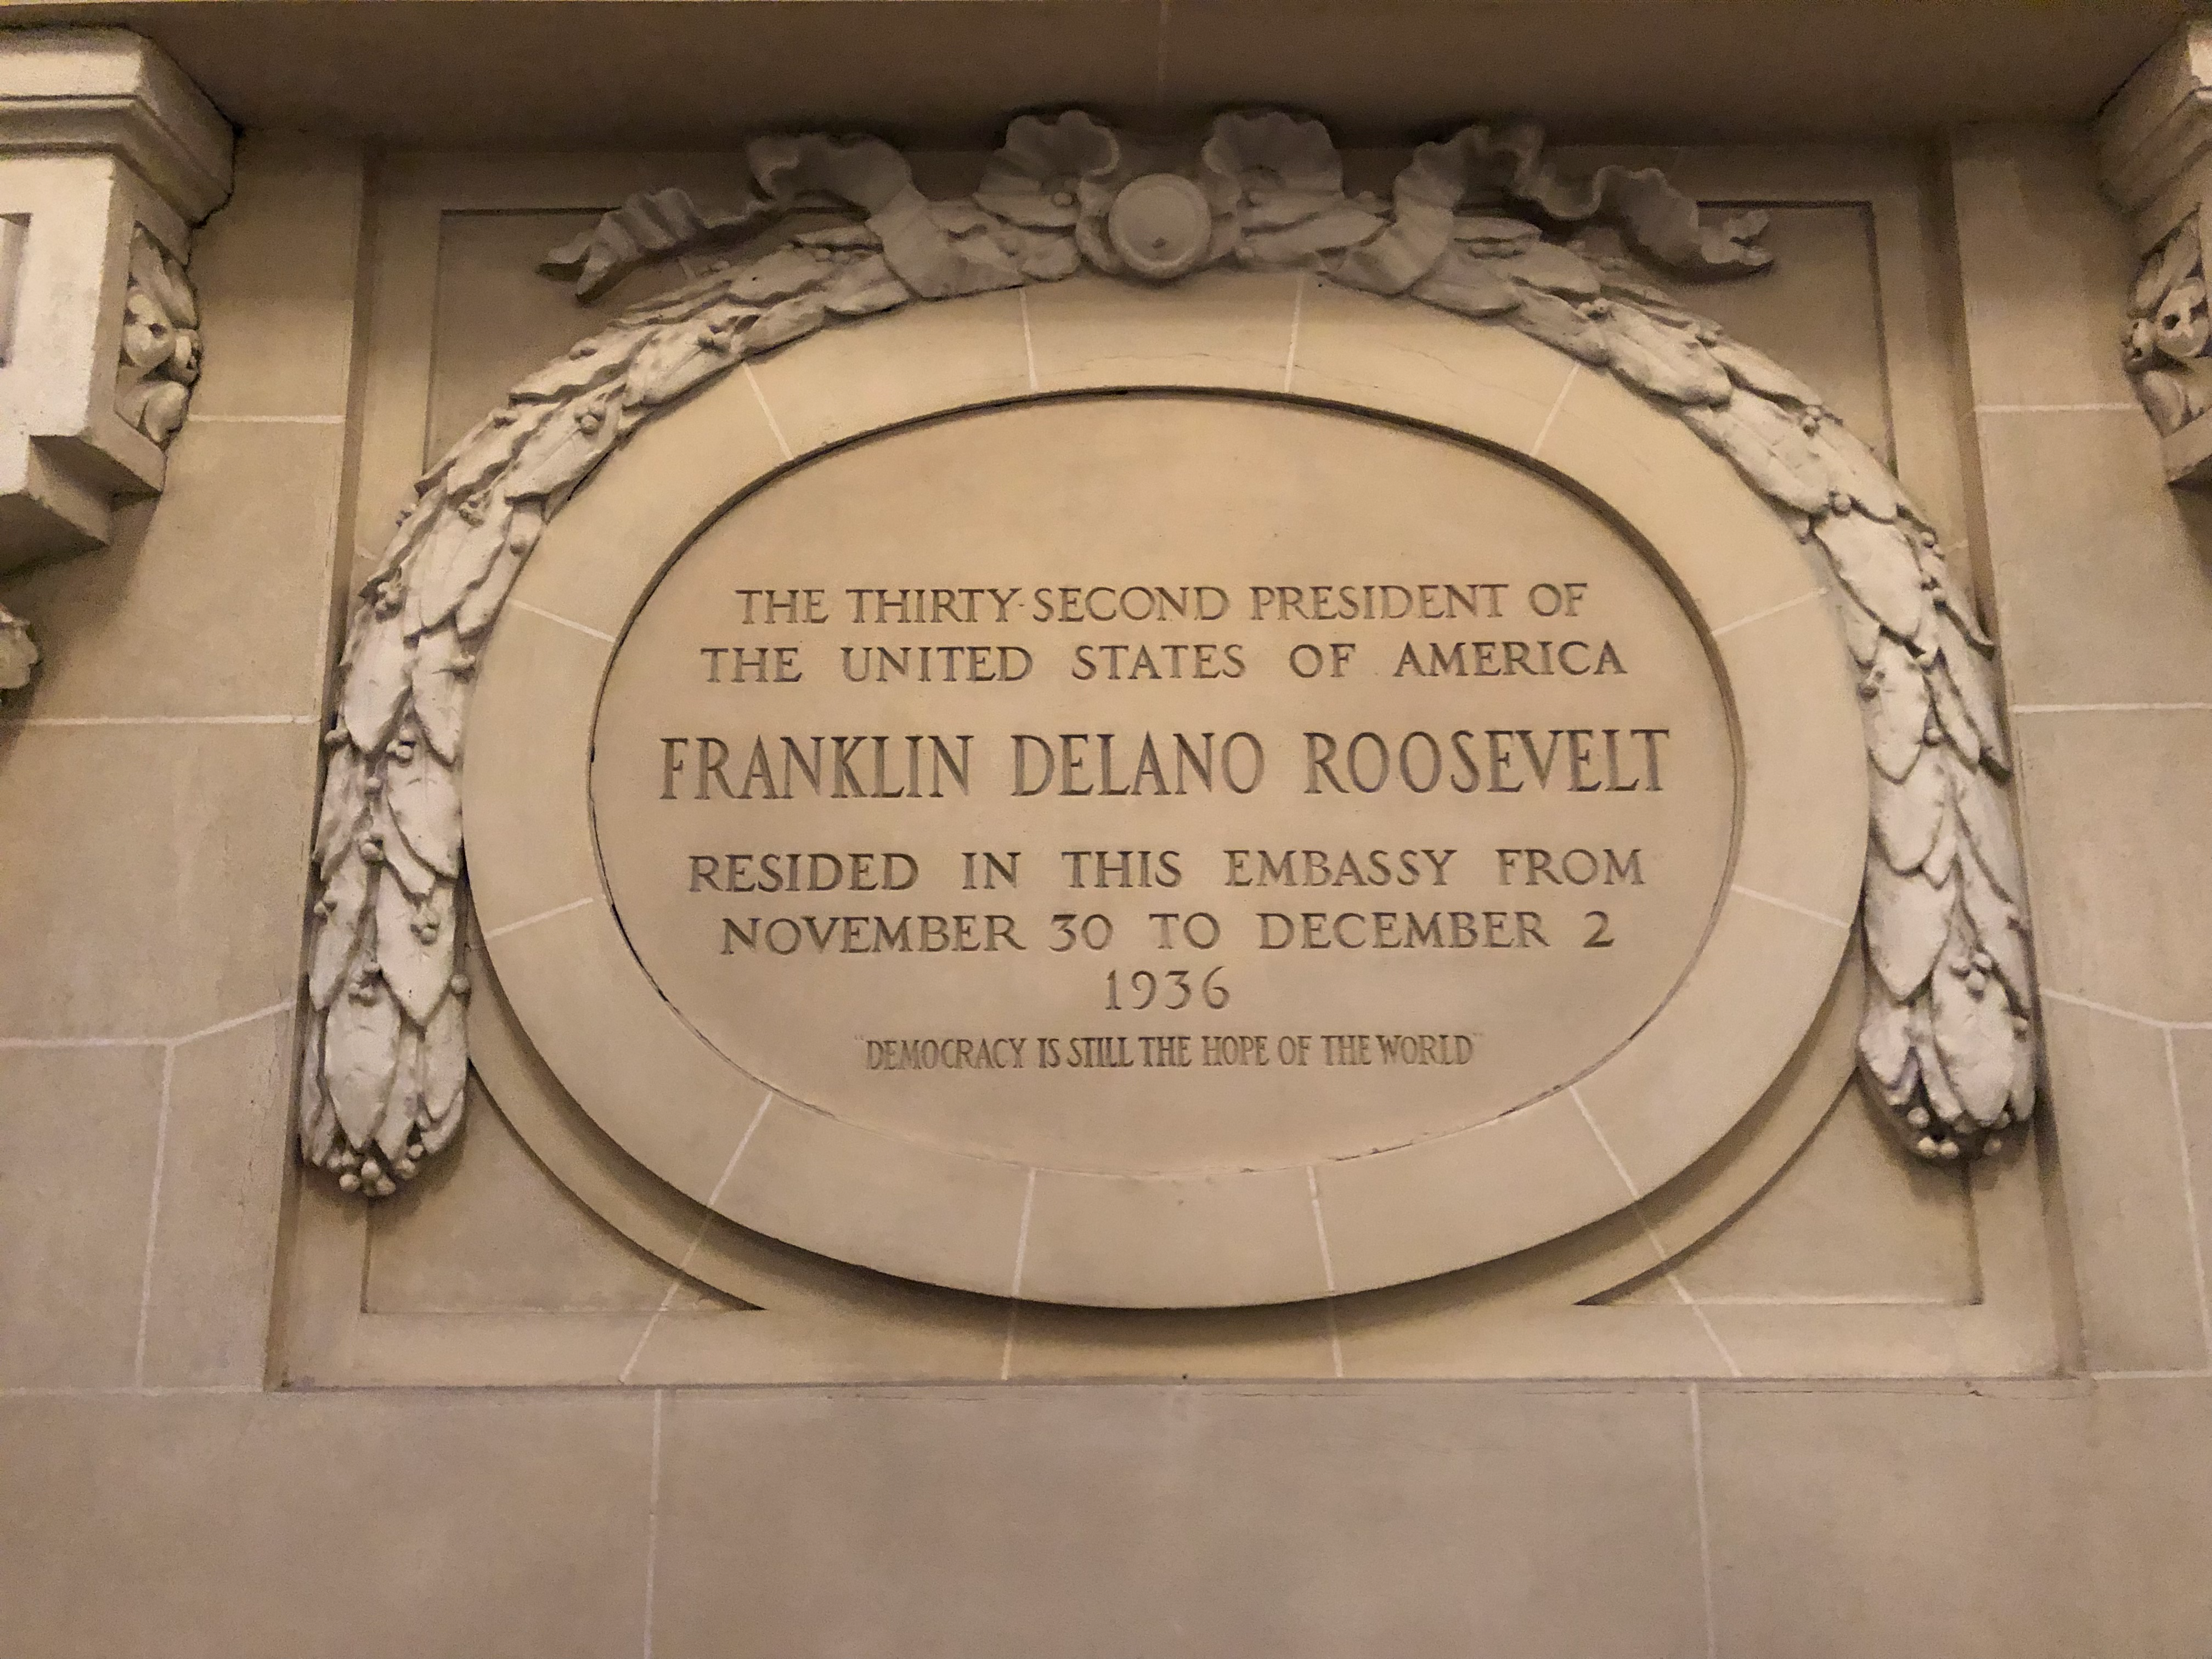 Plaque for Franklin Delano Roosevelt